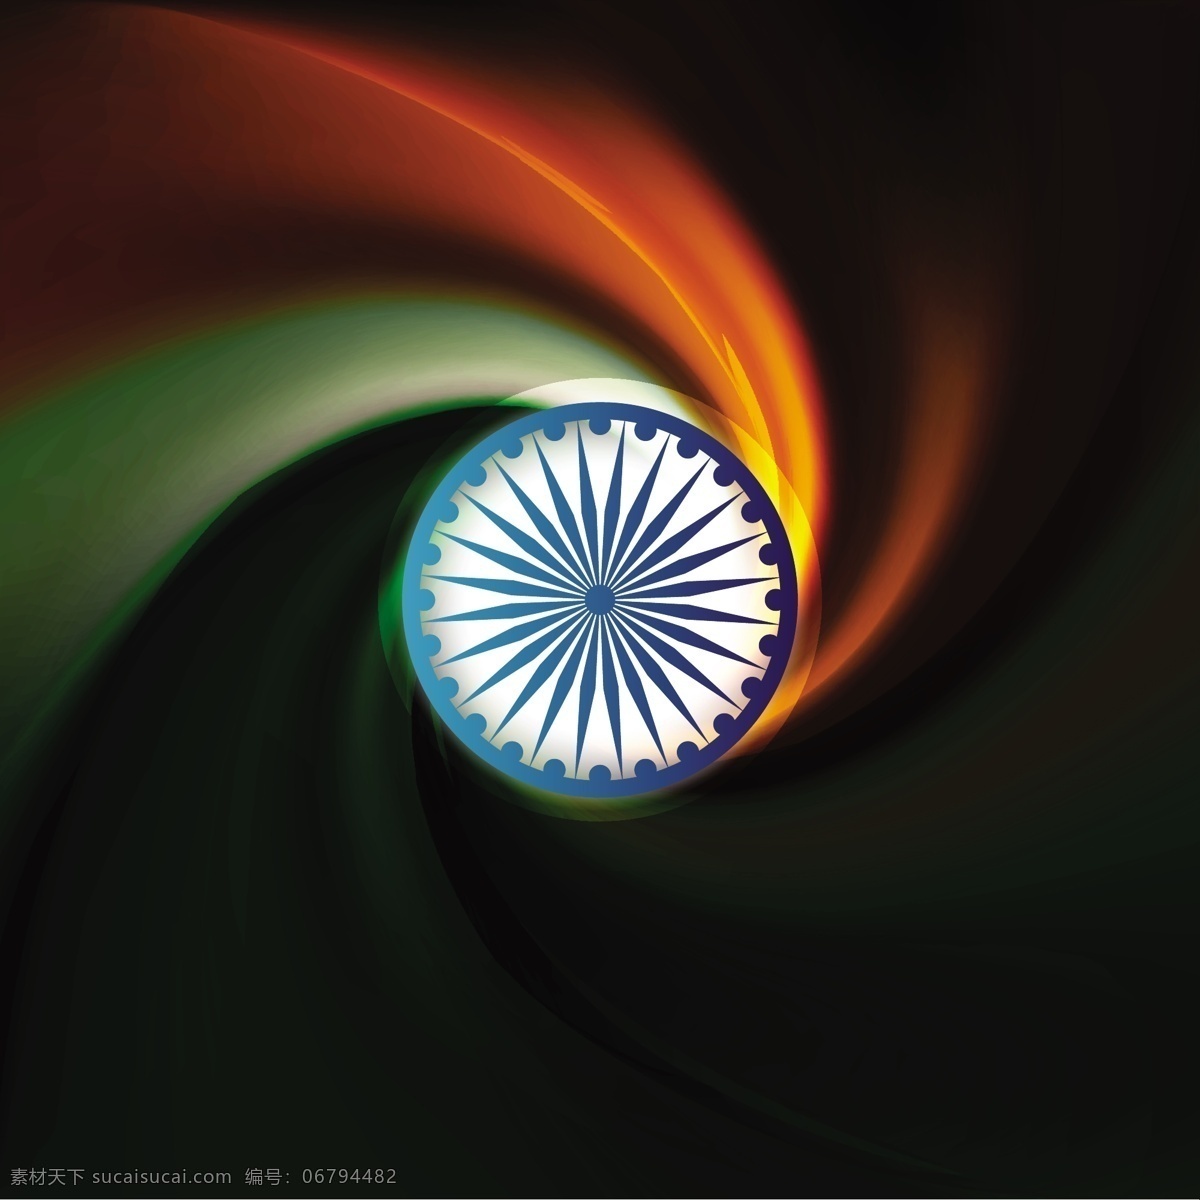 印度背景 背景 抽象 旗帜 波浪 漩涡 印度 节日 车轮 和平 印度国旗 独立日 国家 自由 抽象波 日 政府 波背景 黑色